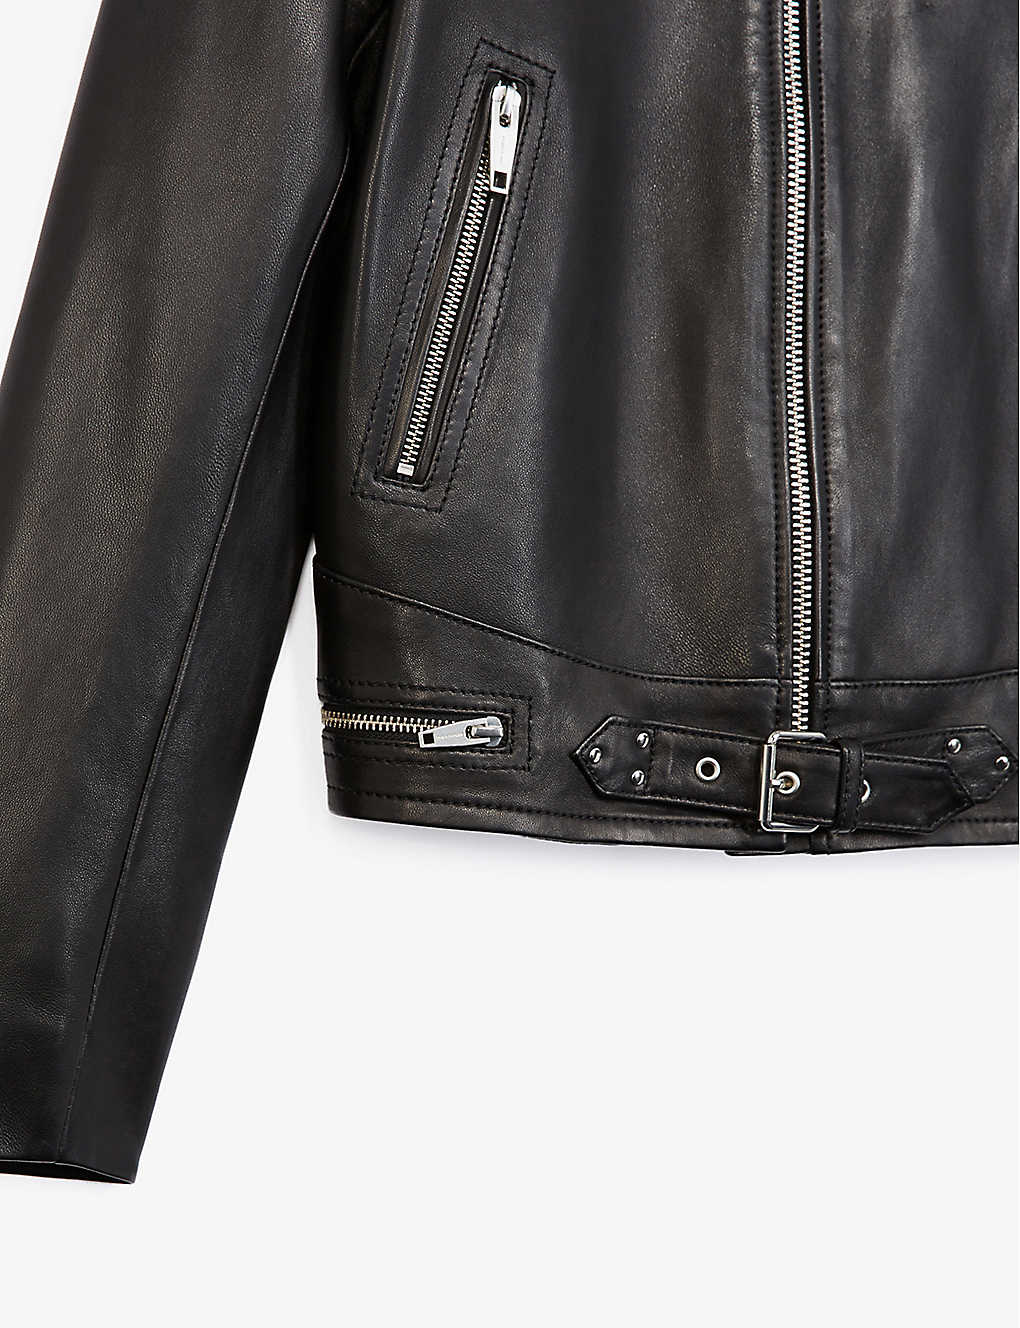 Men’s Black Leather Jacket